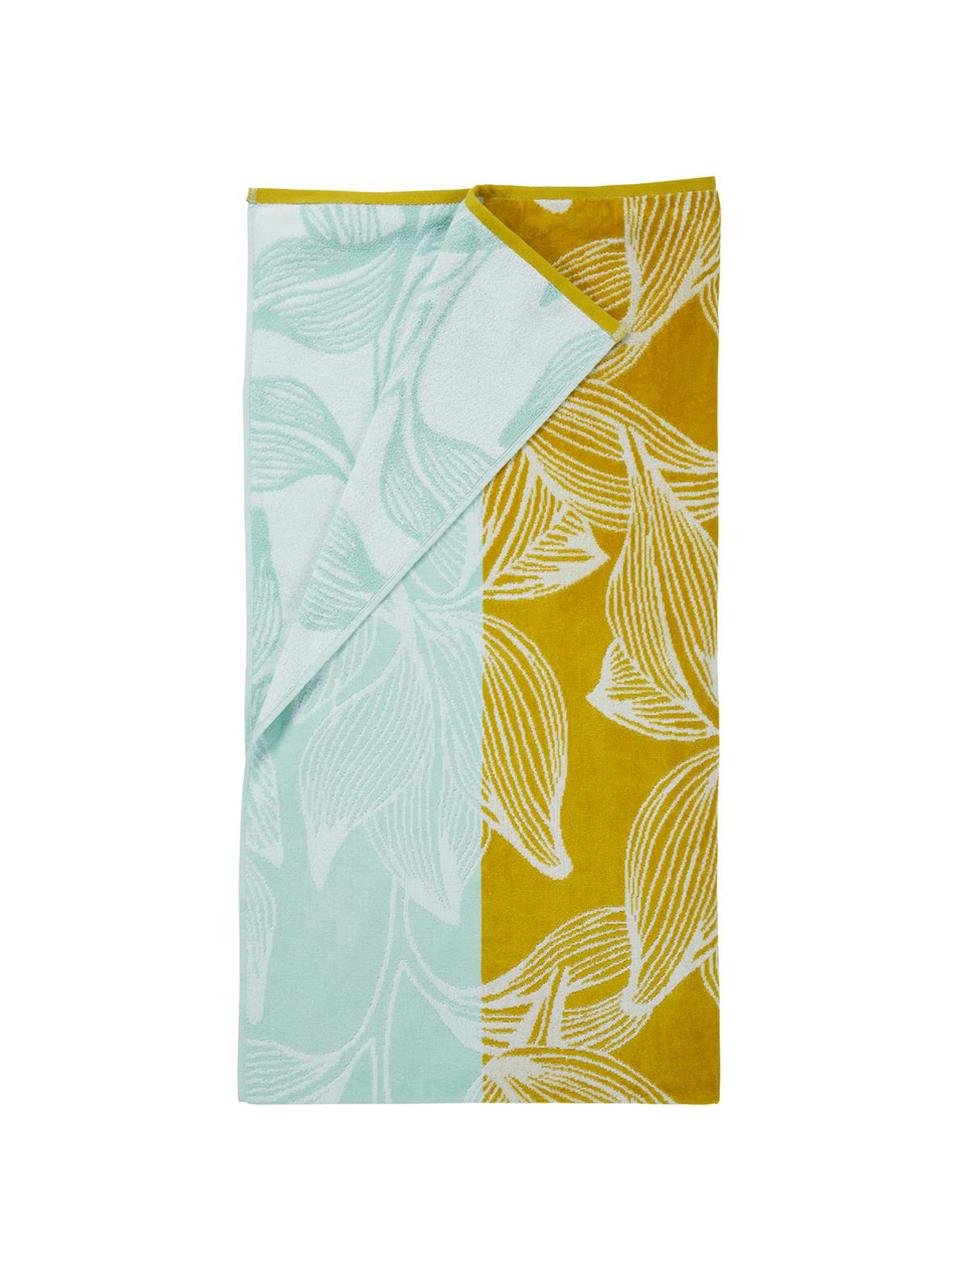 Strandlaken Mimosa, Katoen, lichte kwaliteit, 330 g/m², Geel, lichtblauw, 100 x 180 cm